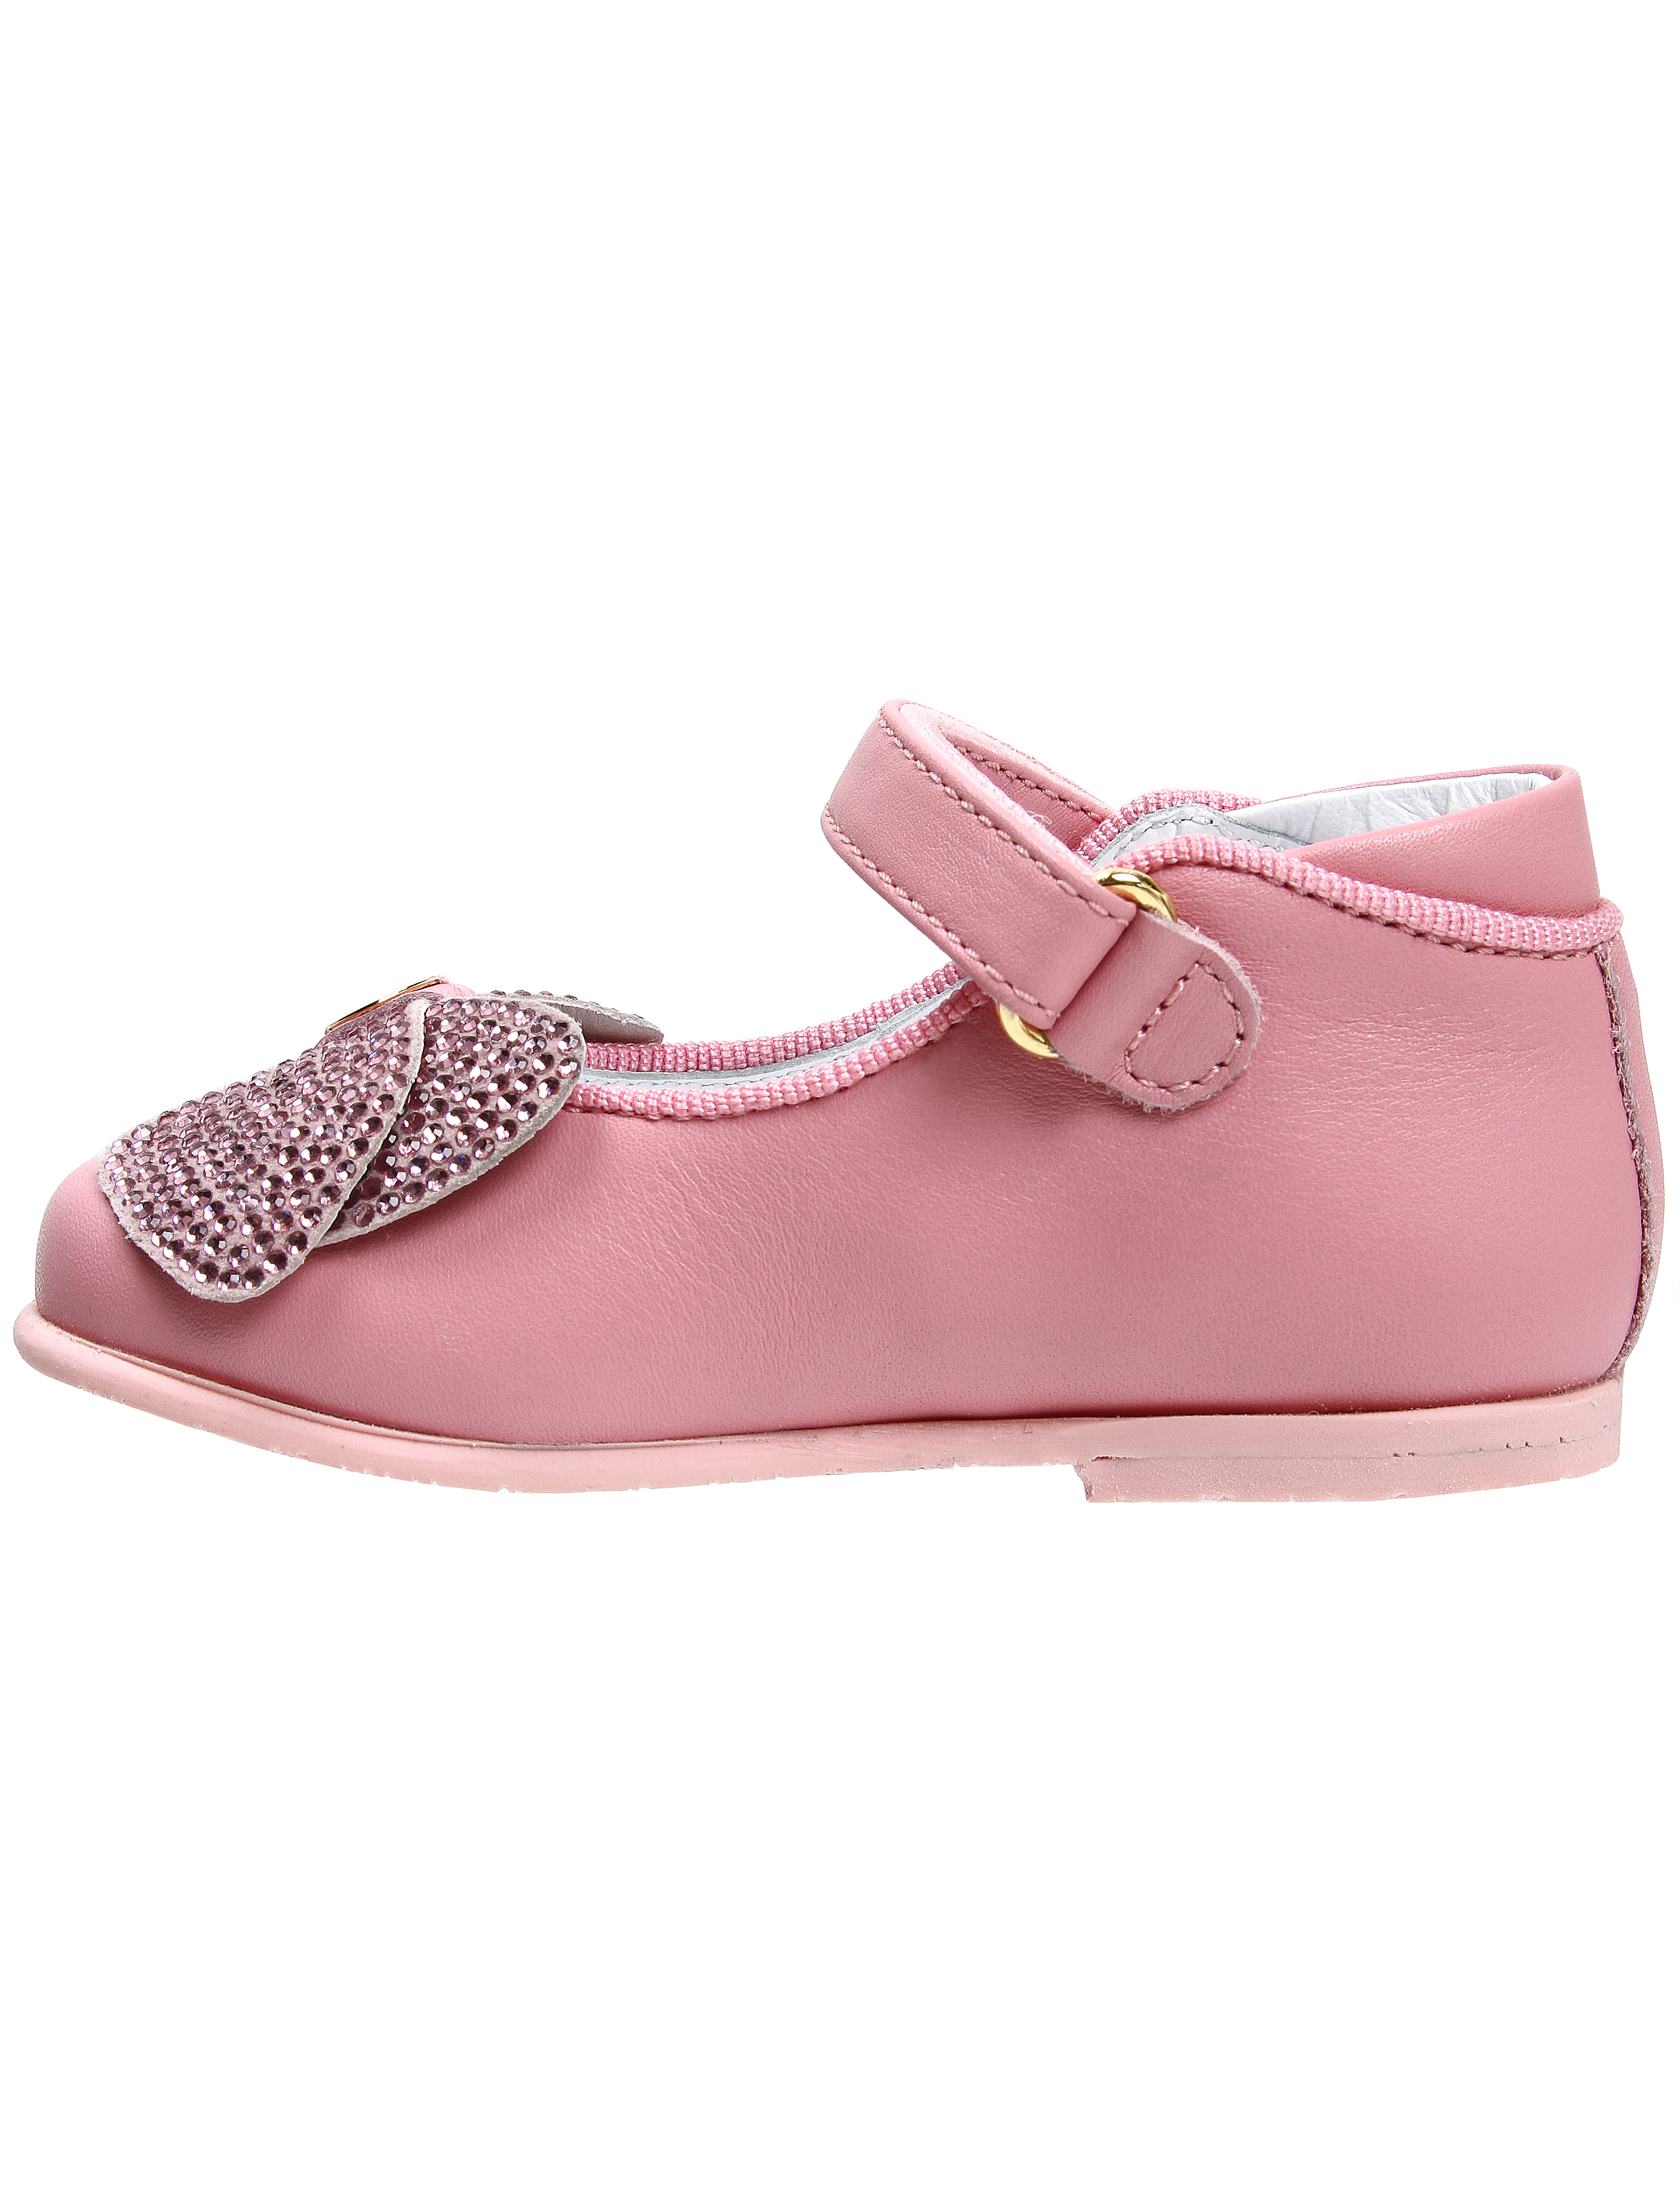 Туфли Miss Blumarine 1914121, цвет розовый, размер 21 2012609870043 - фото 3